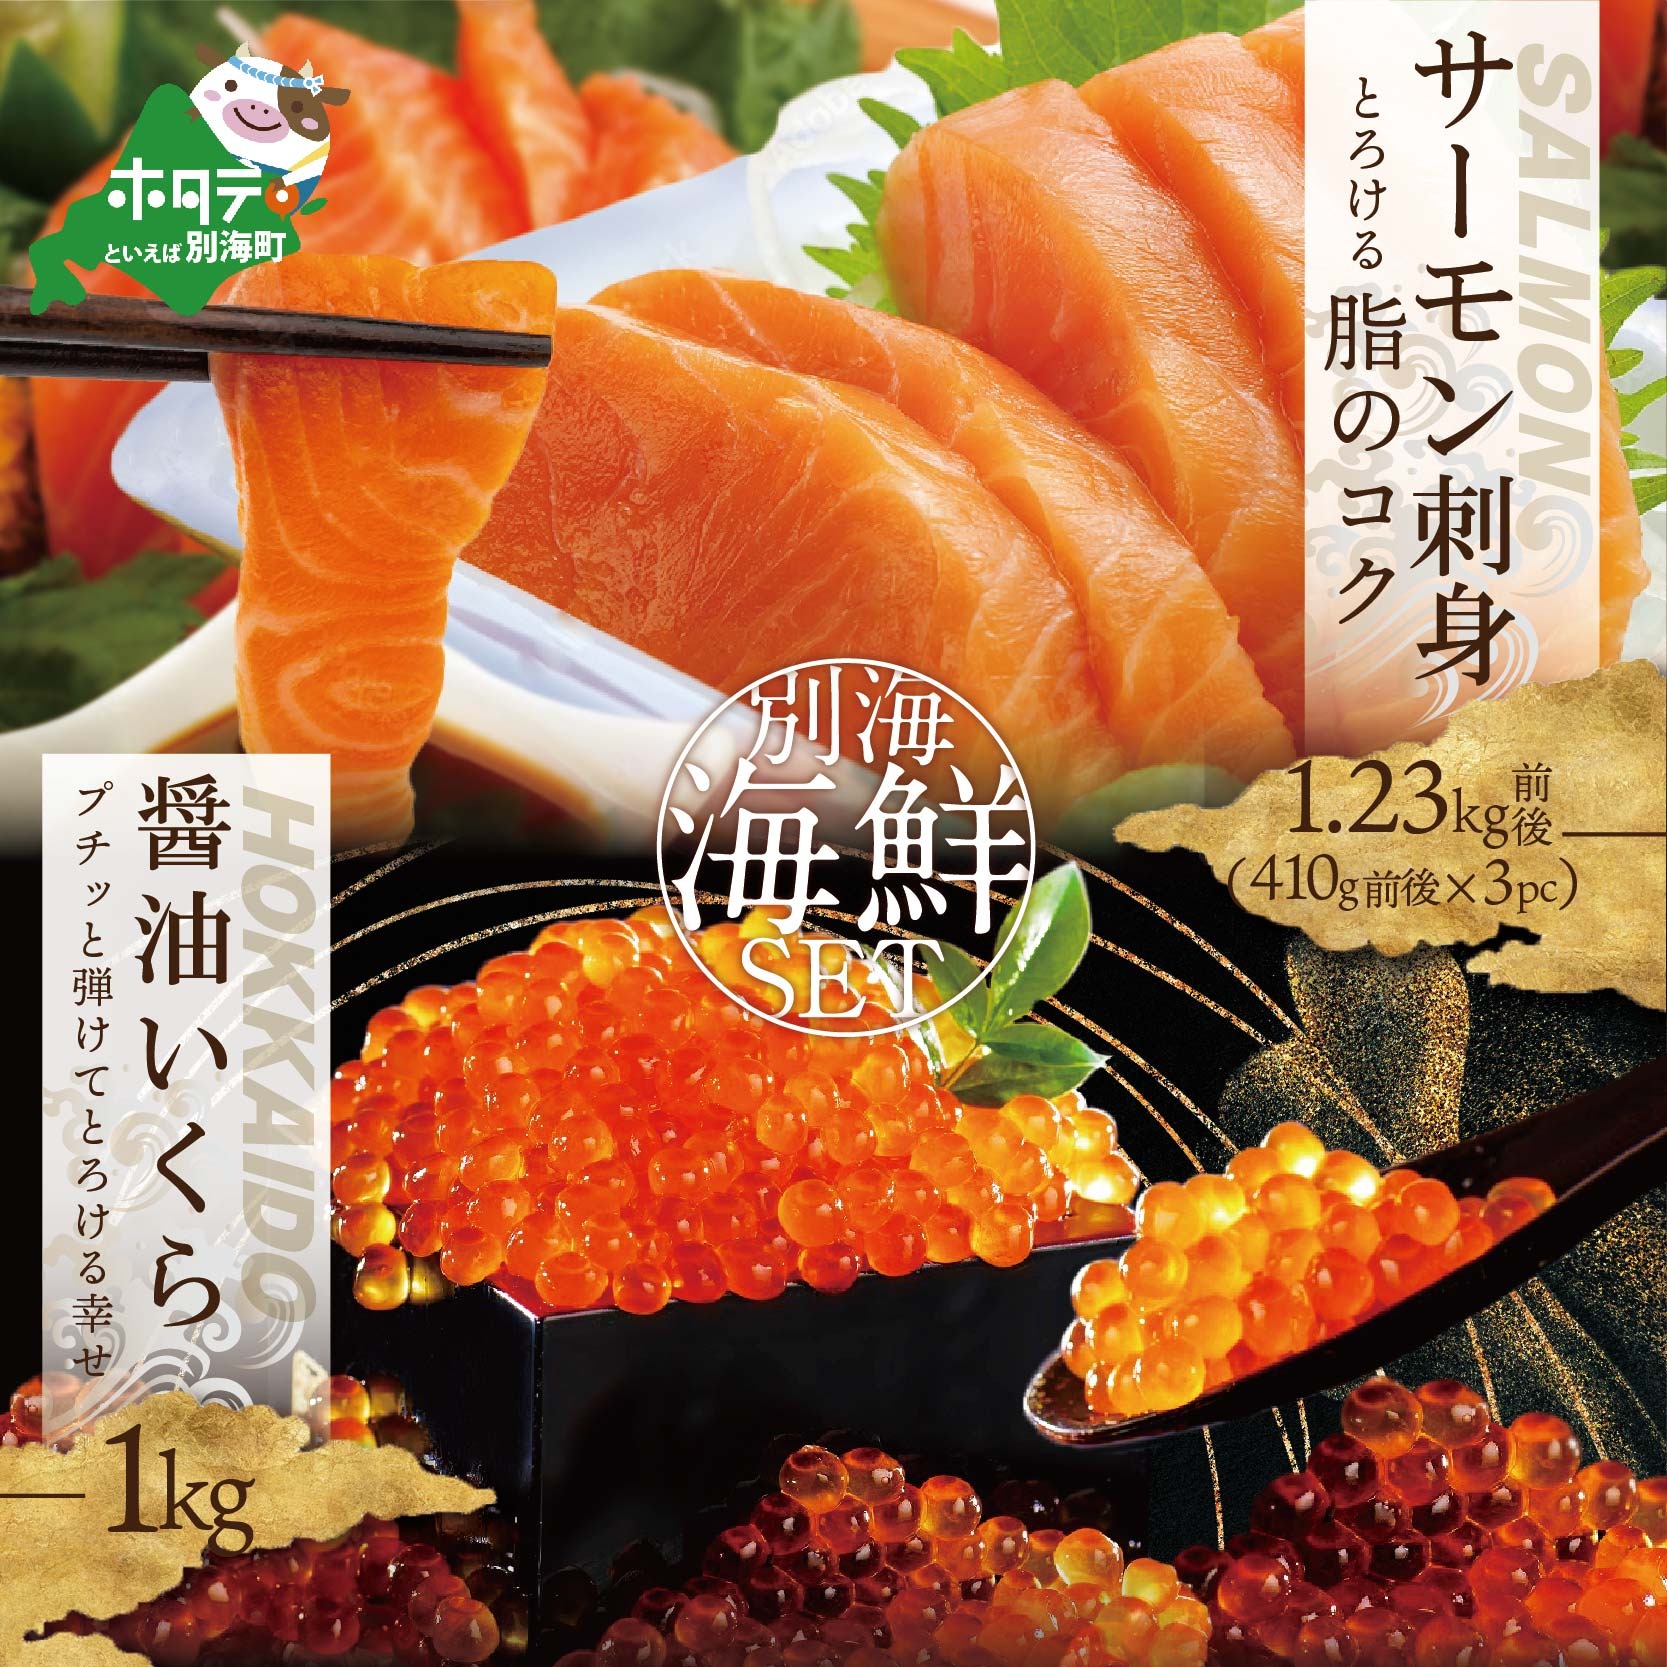 サーモン ･ いくら 海鮮セット 刺身用サーモン 1.23kg（410g前後3パック） + 北海道産醤油いくら1kg 